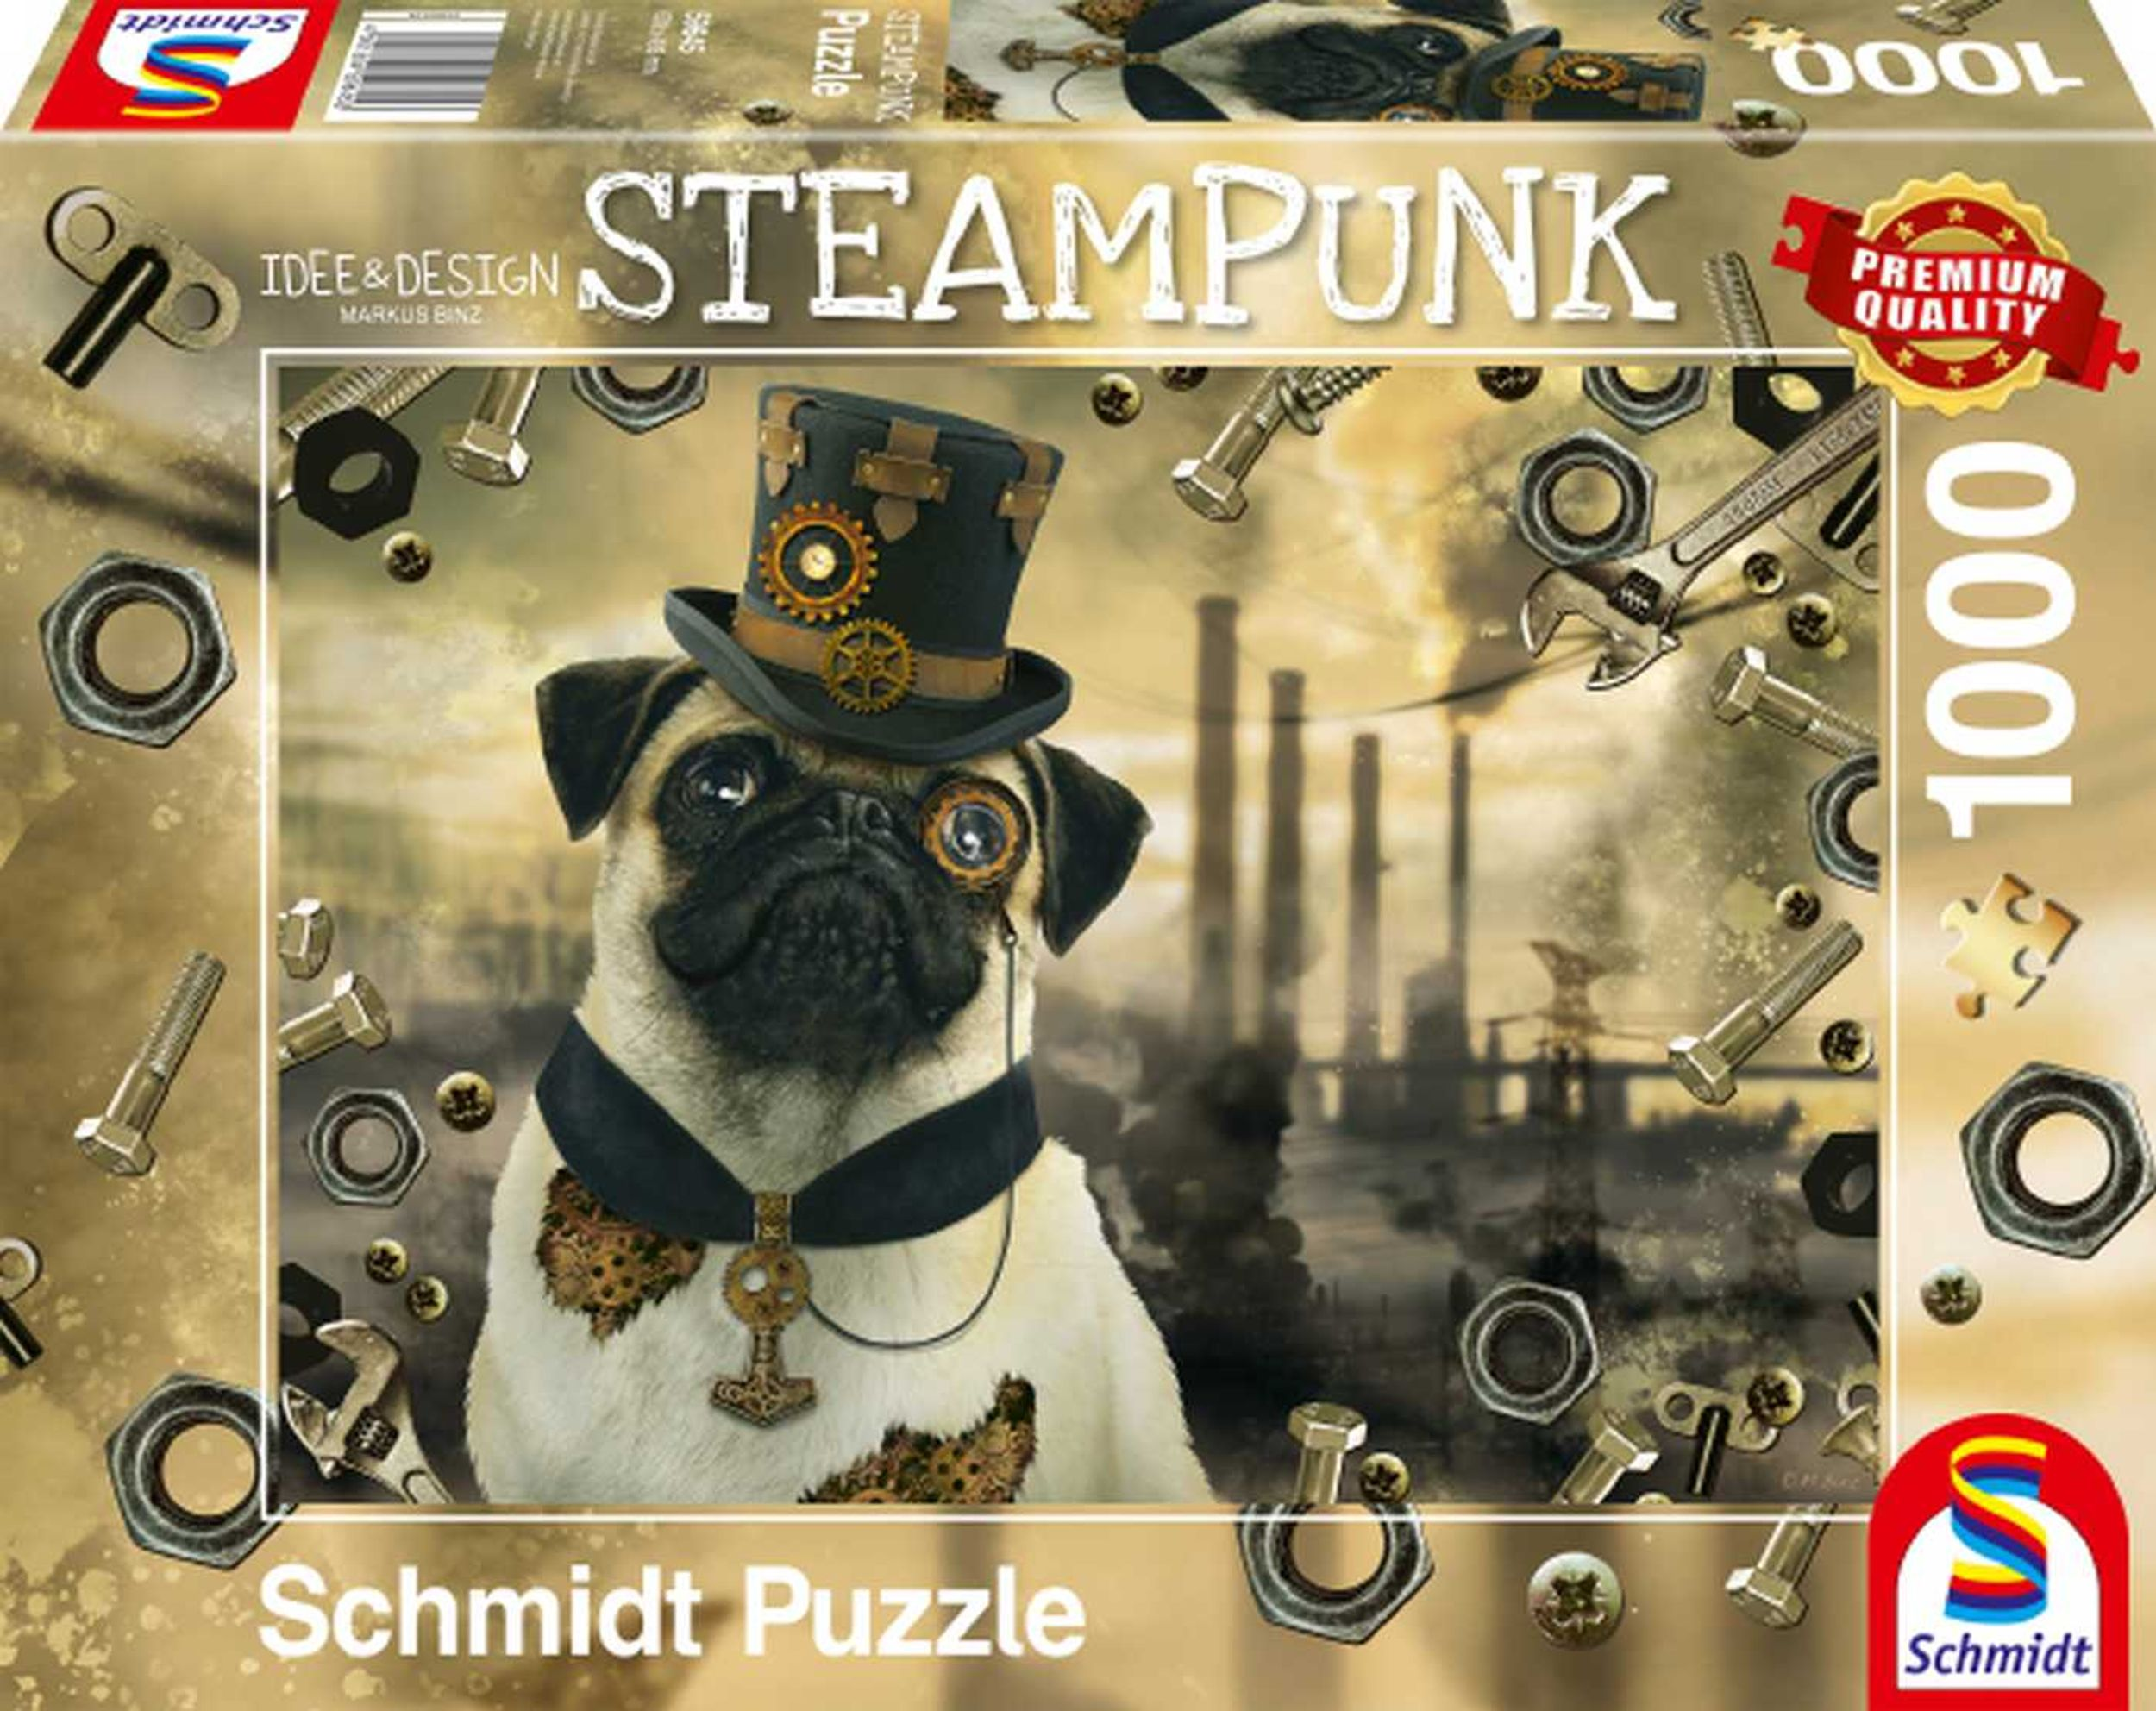 SCHMIDT SPIELE Steampunk Hund - Puzzle Binz Markus